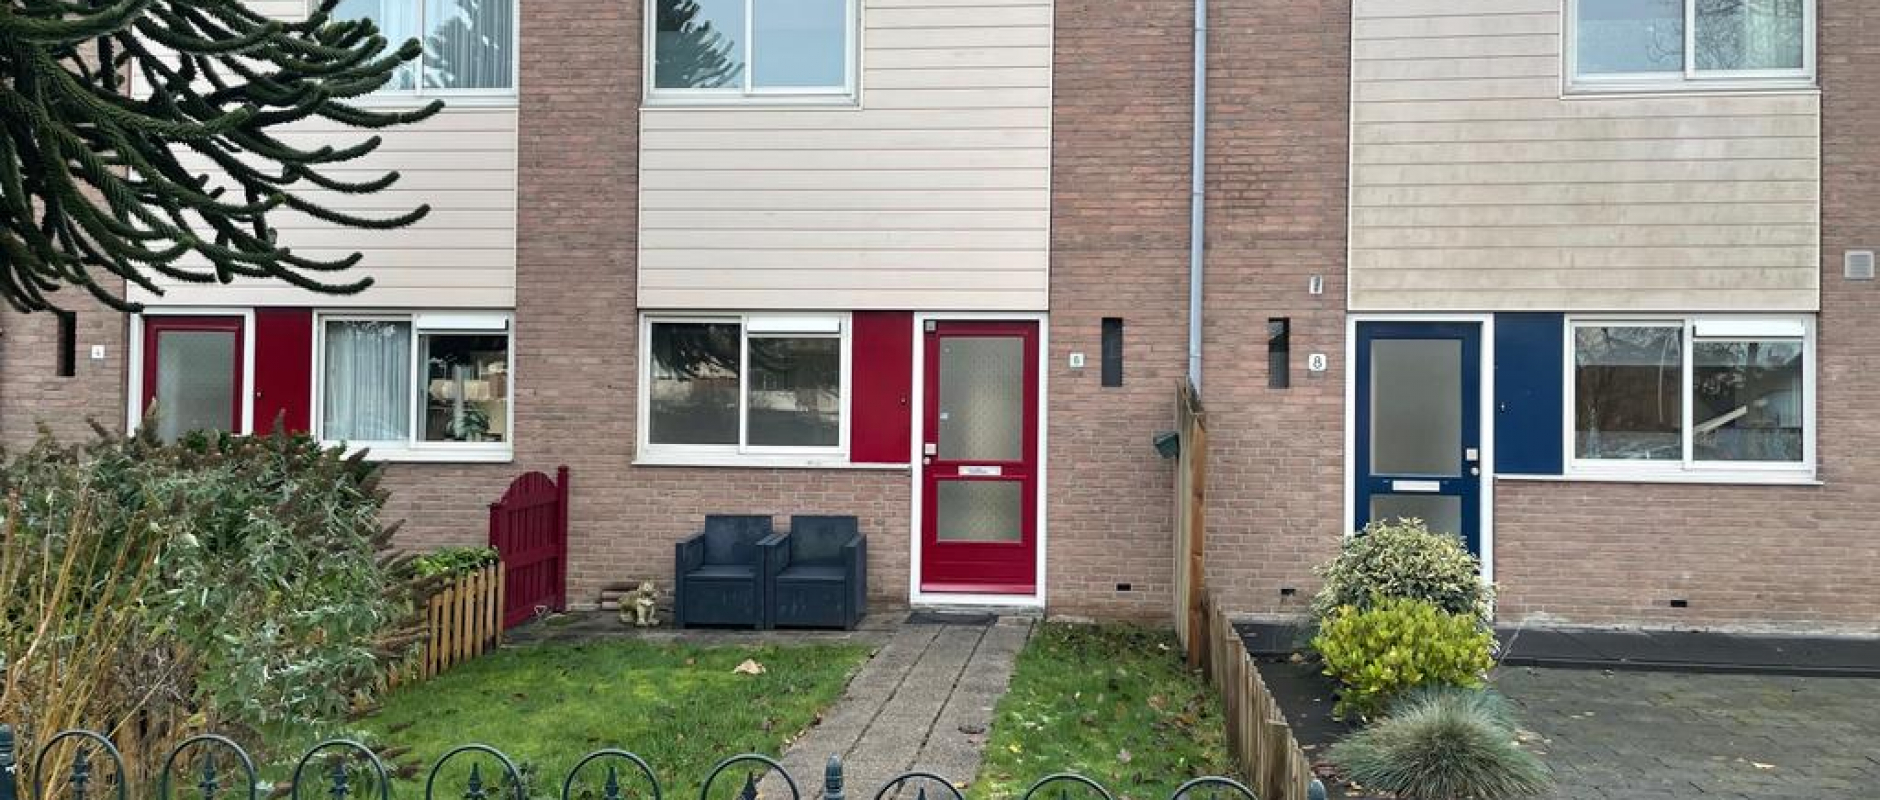 Woning te koop aan de Oelerbeek 6 te Zwolle